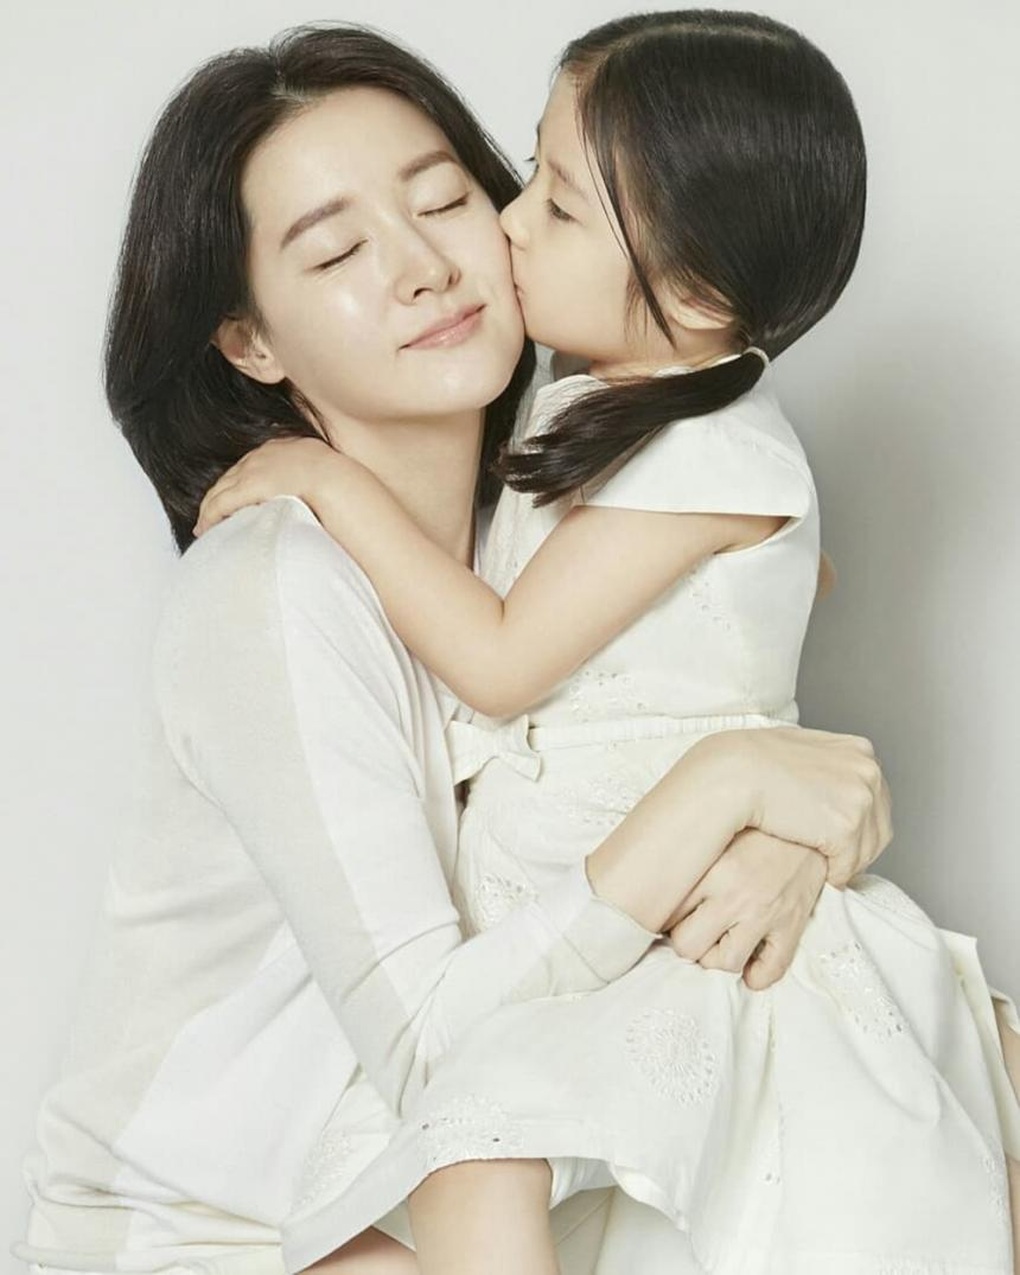 Con gái minh tinh Lee Young Ae: Xinh đẹp như mẹ, có tố chất nghệ thuật - Ảnh 1.